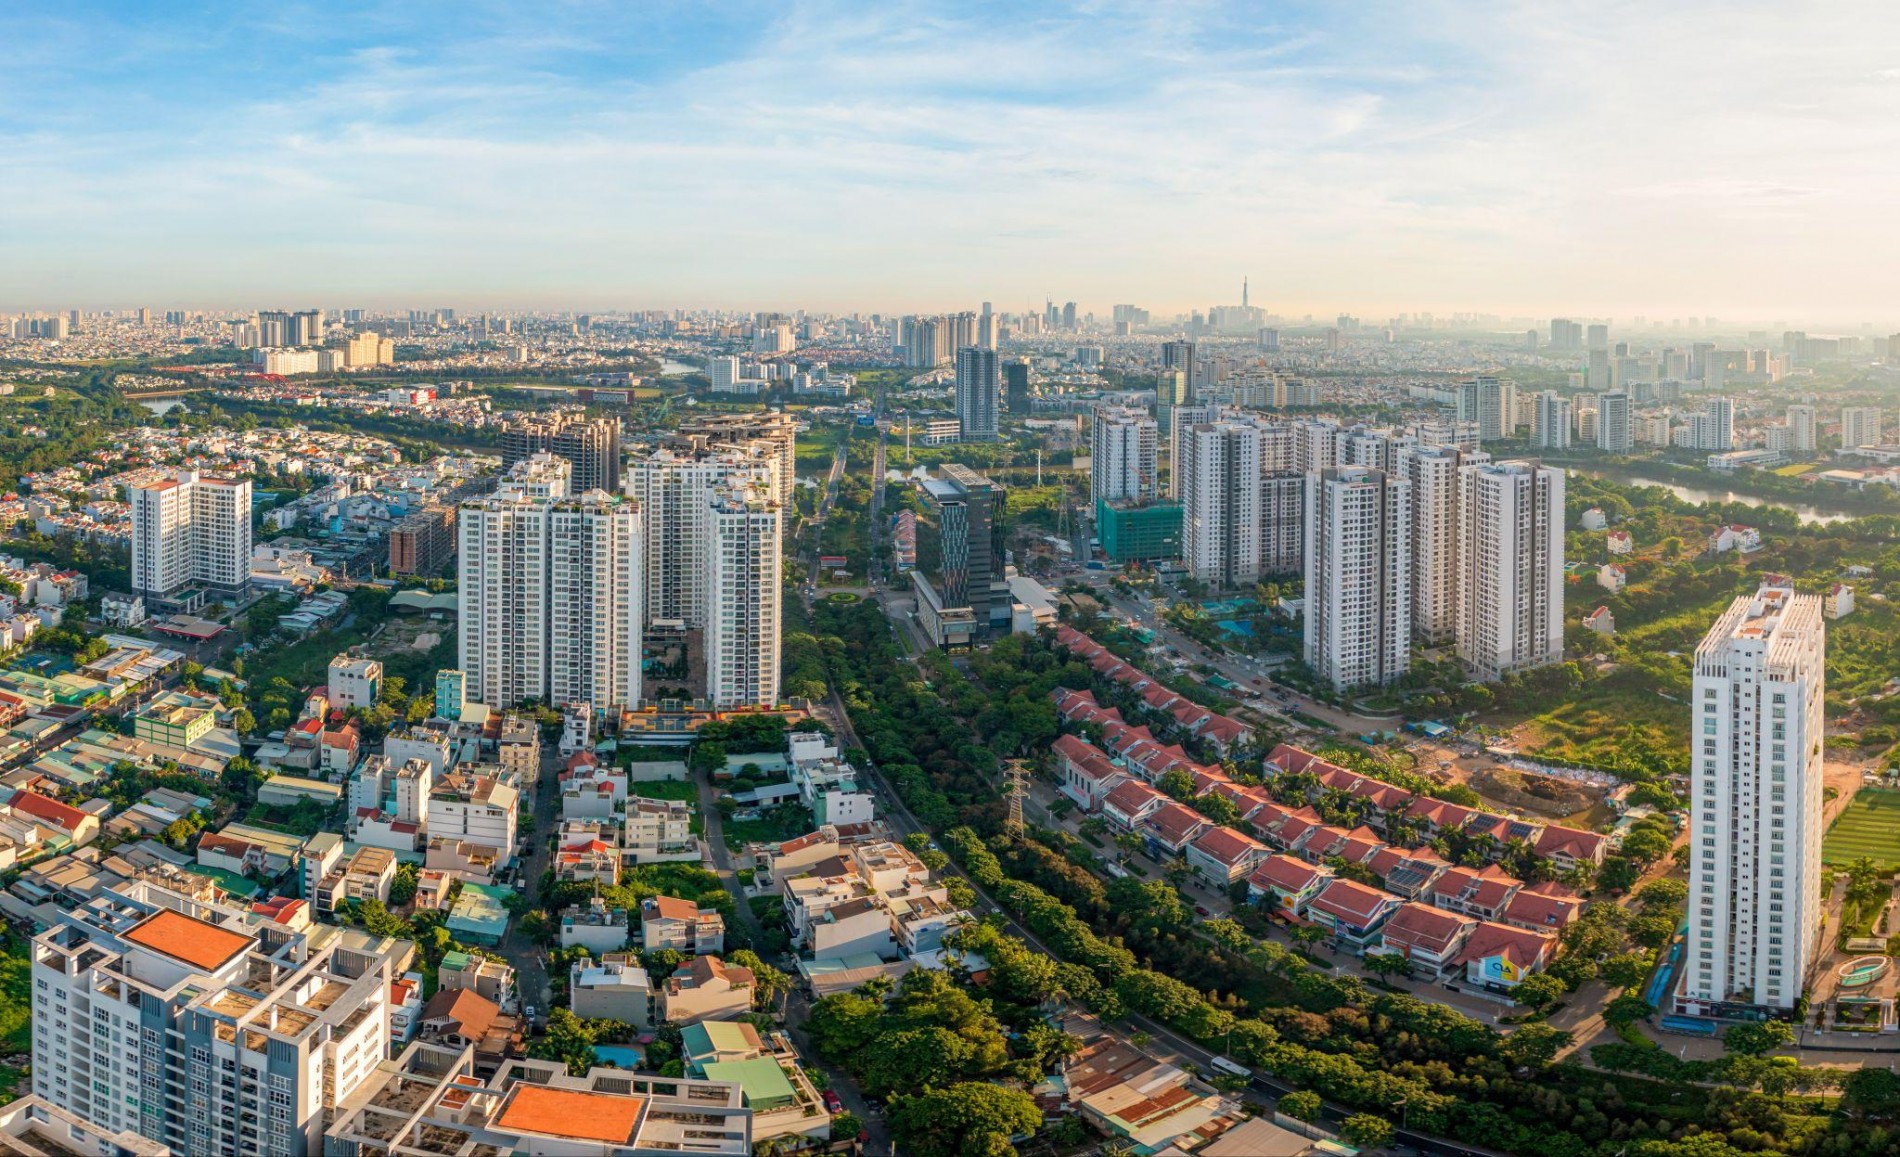 
Từ khoảng cuối năm 2022 đến đầu năm 2023 thị trường bất động sản Việt Nam đang rơi vào tình trạng khá trầm lắng
